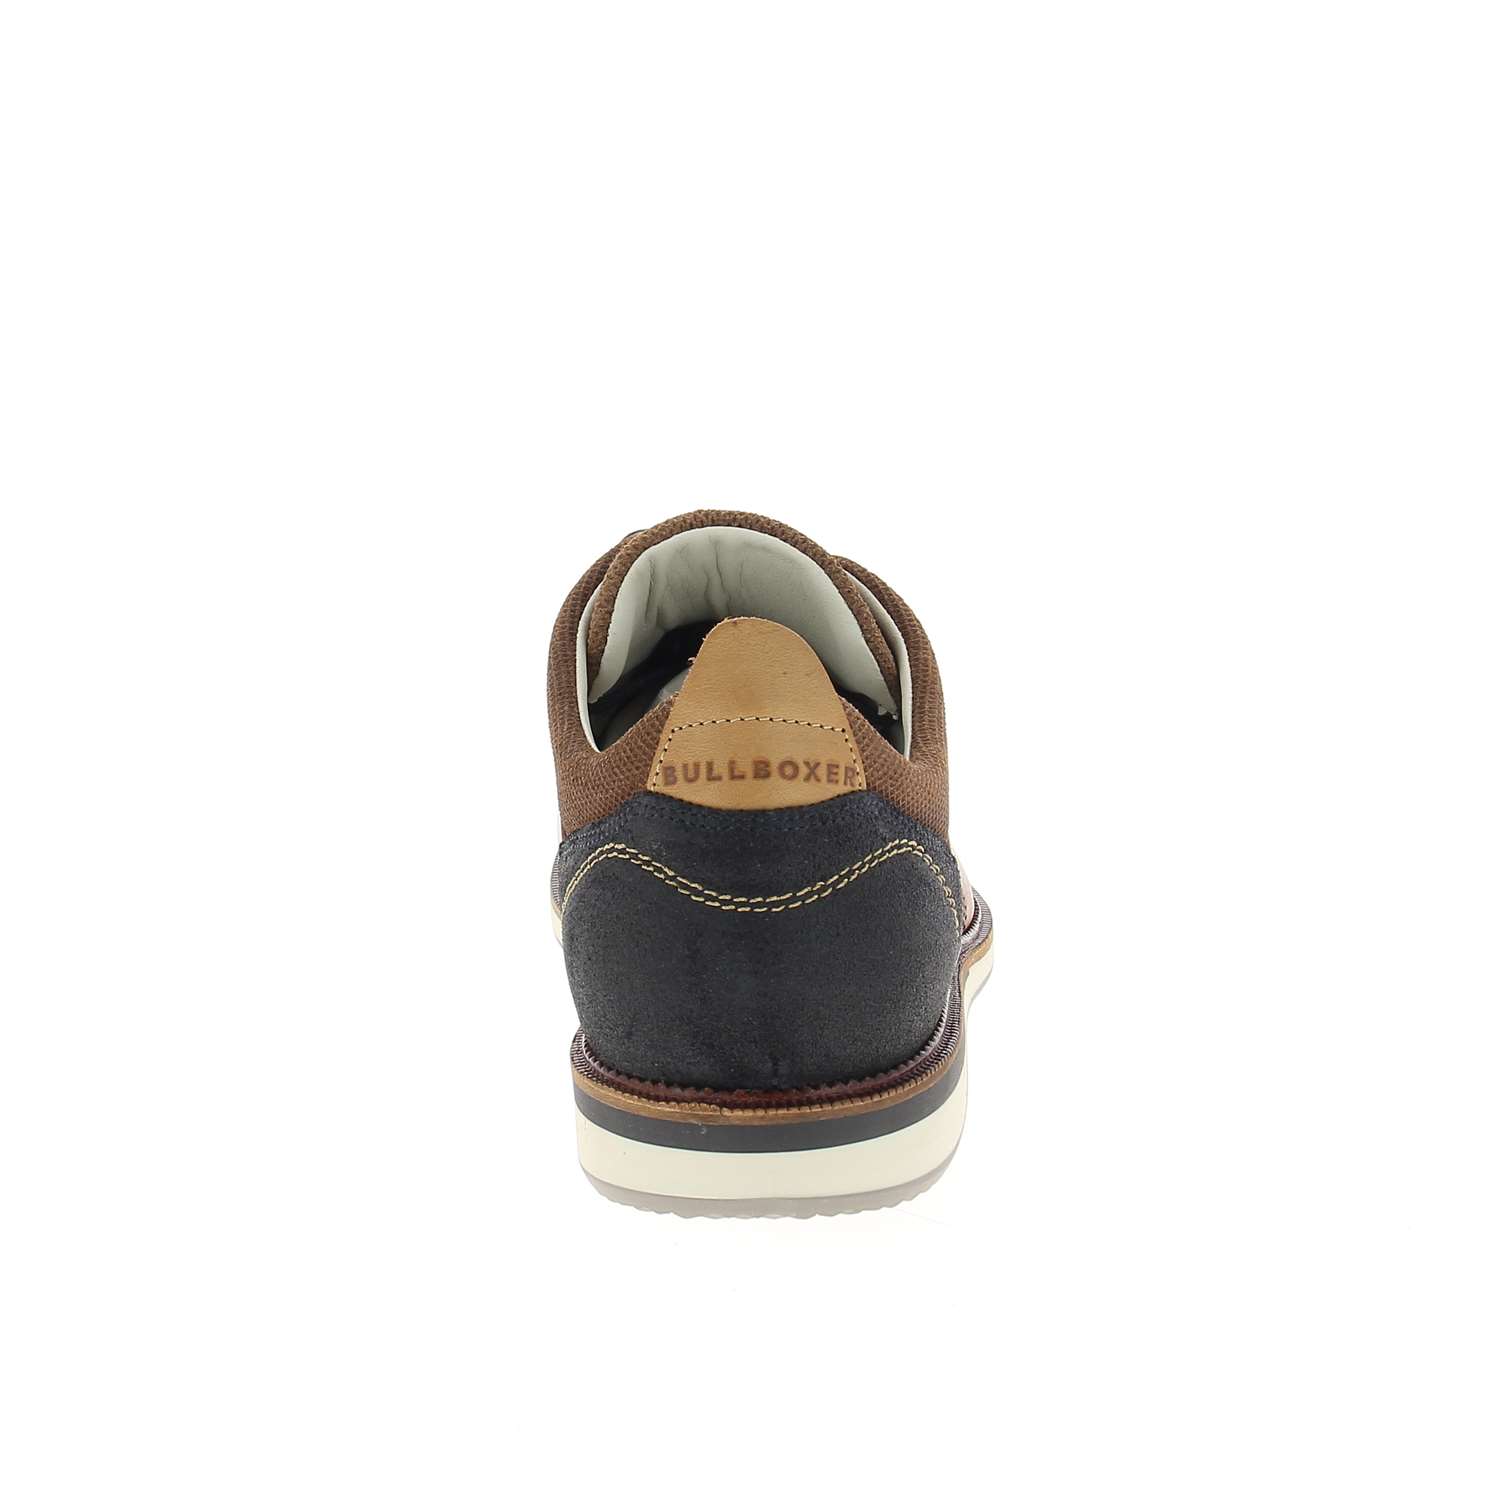 04 - APRILIA - BULLBOXER - Chaussures à lacets - Cuir